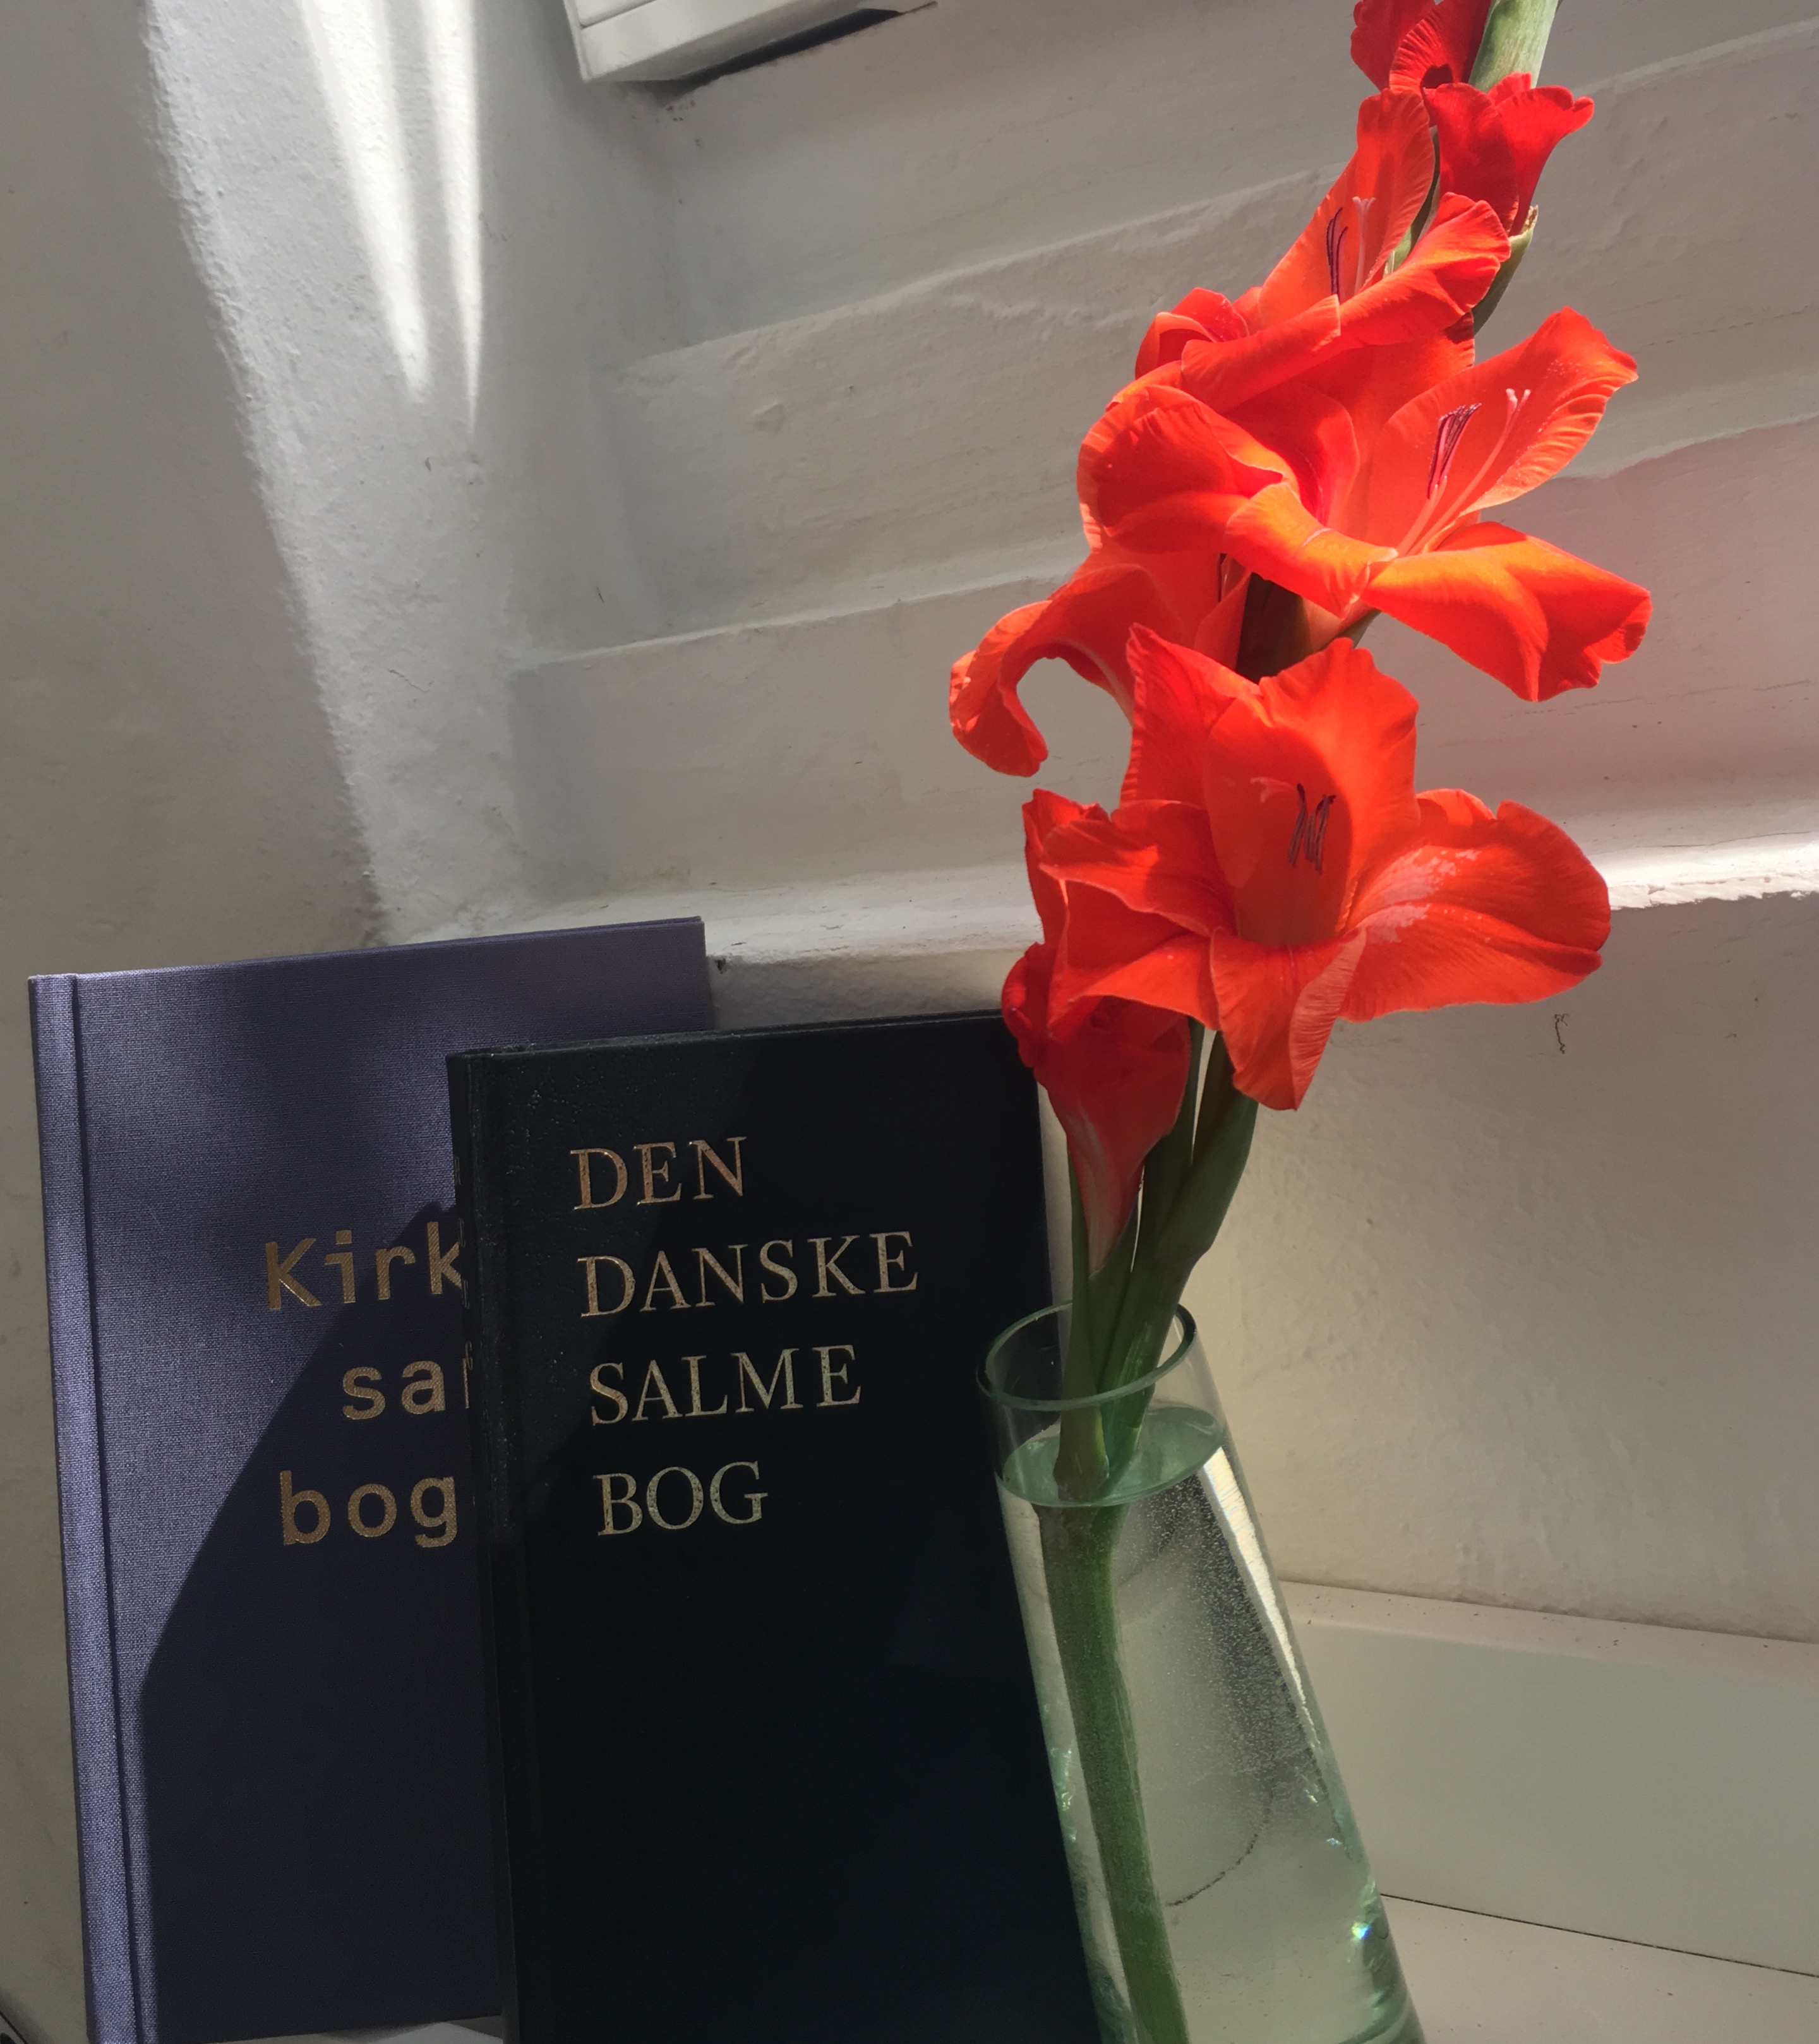 billede med en salmebog og en rød gladiolus i eb glasvase